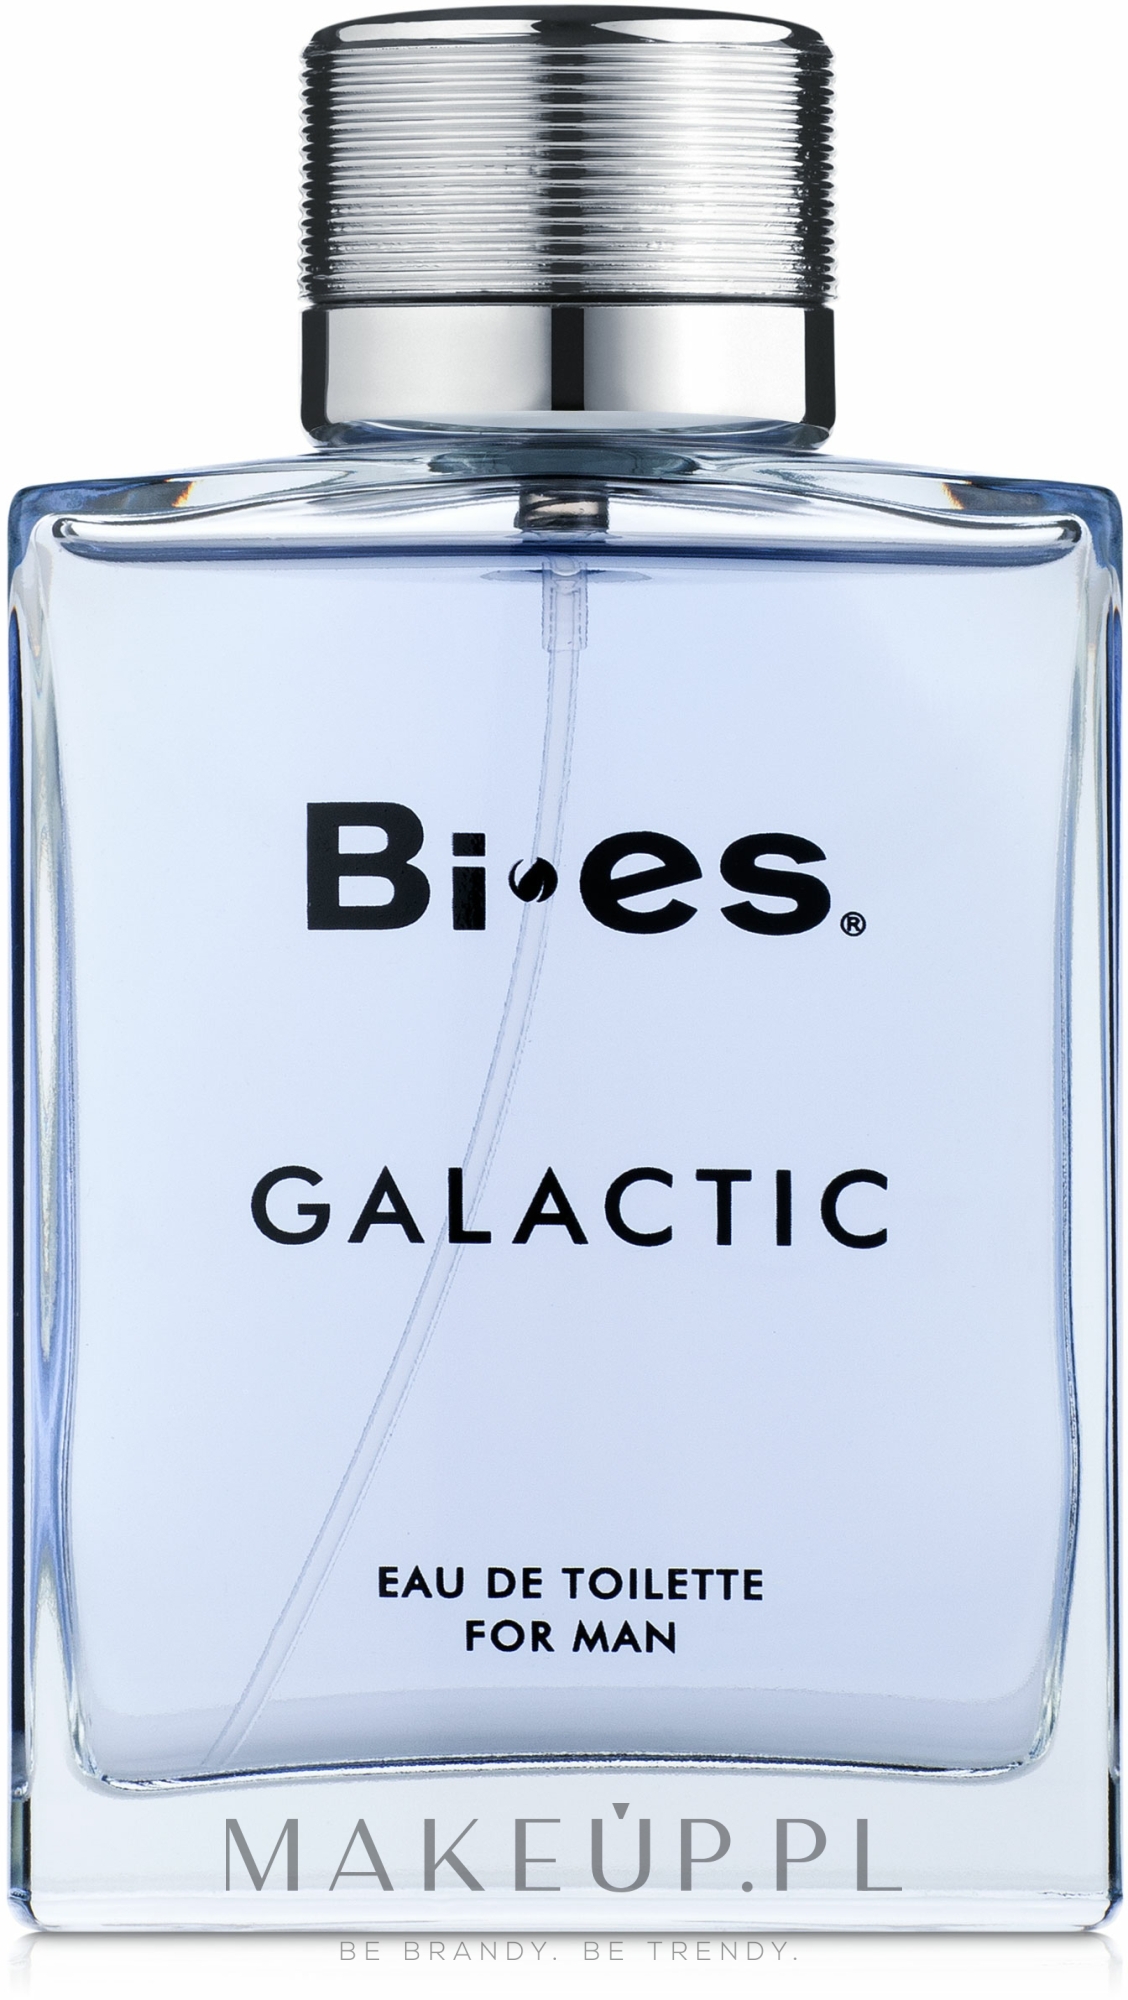 bi-es galactic for man